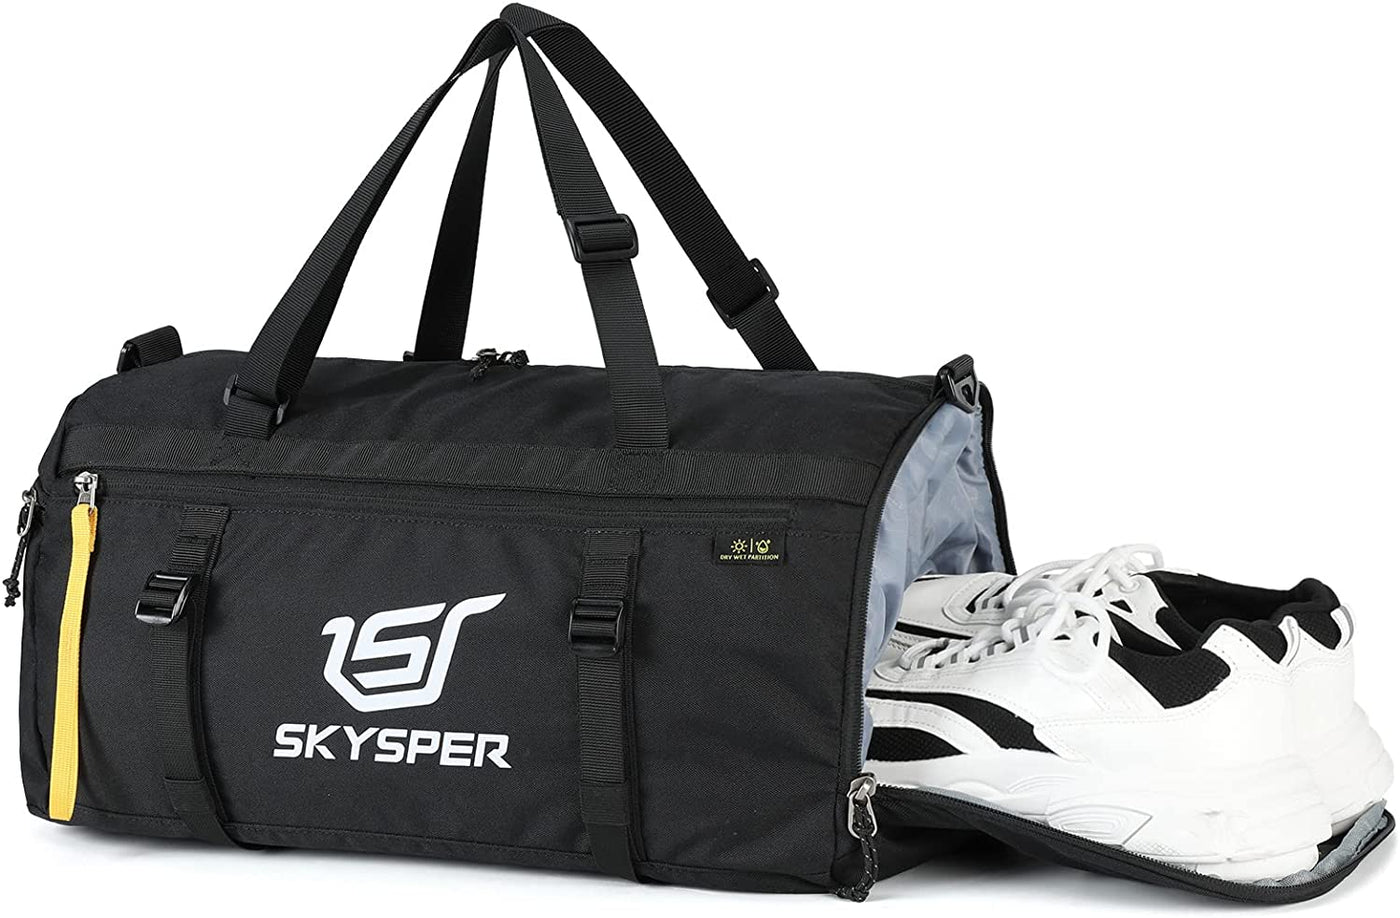 SKYSPER ISPORT30 - 30L Small Sports Gym Duffel Bag